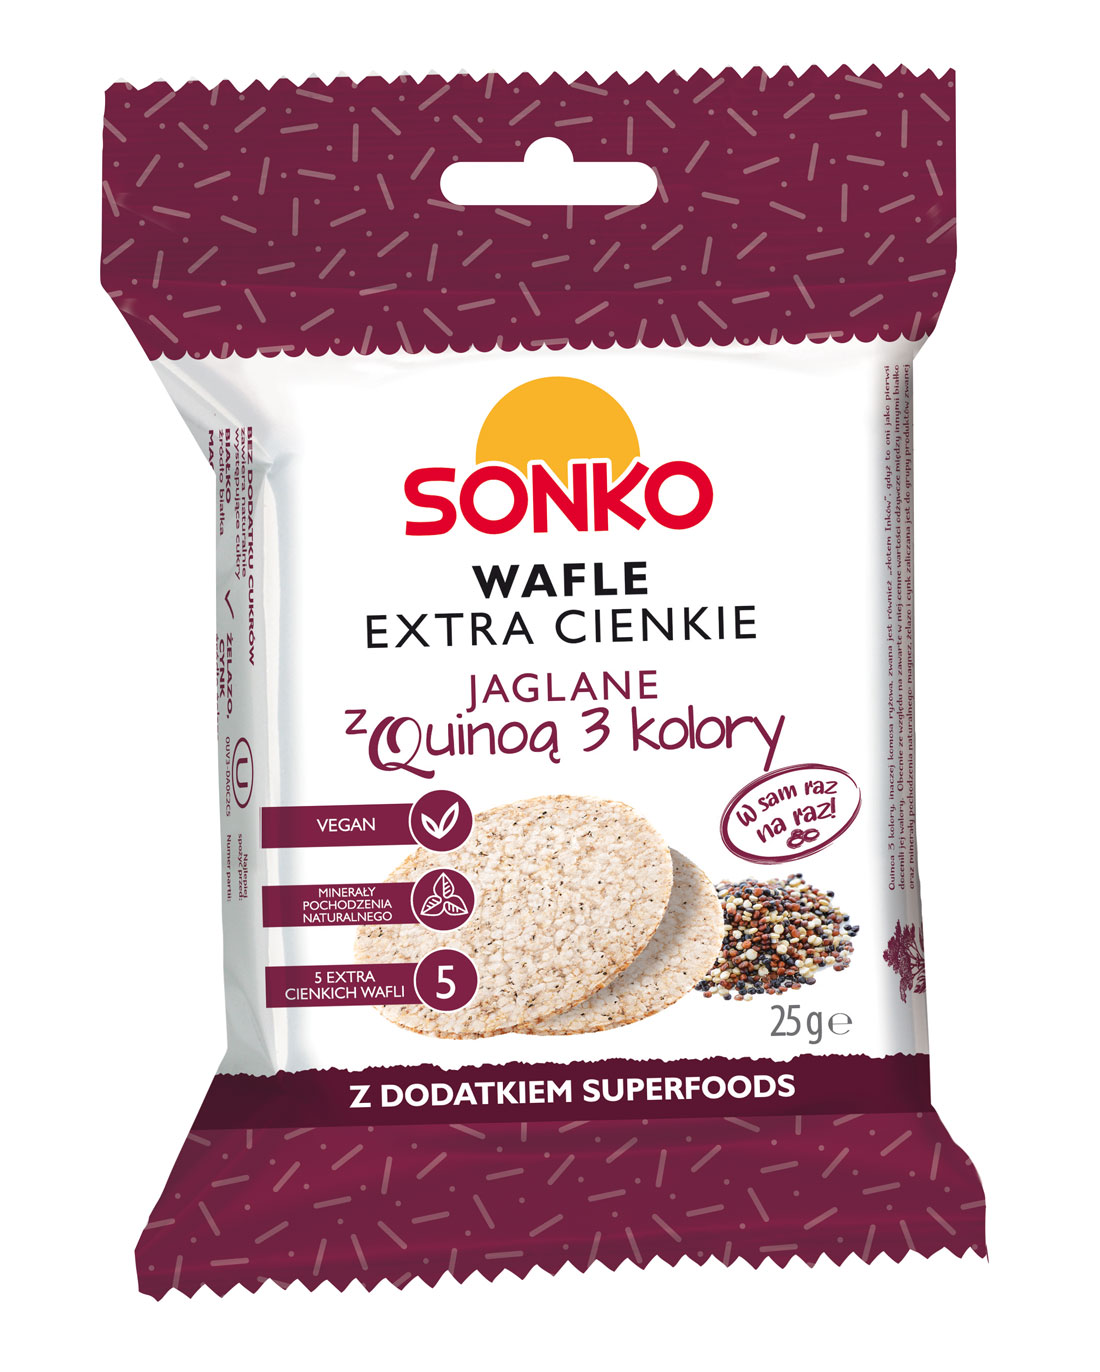 Sonko Wafle extra cienkie Jaglane z Quinoą 3 kolory